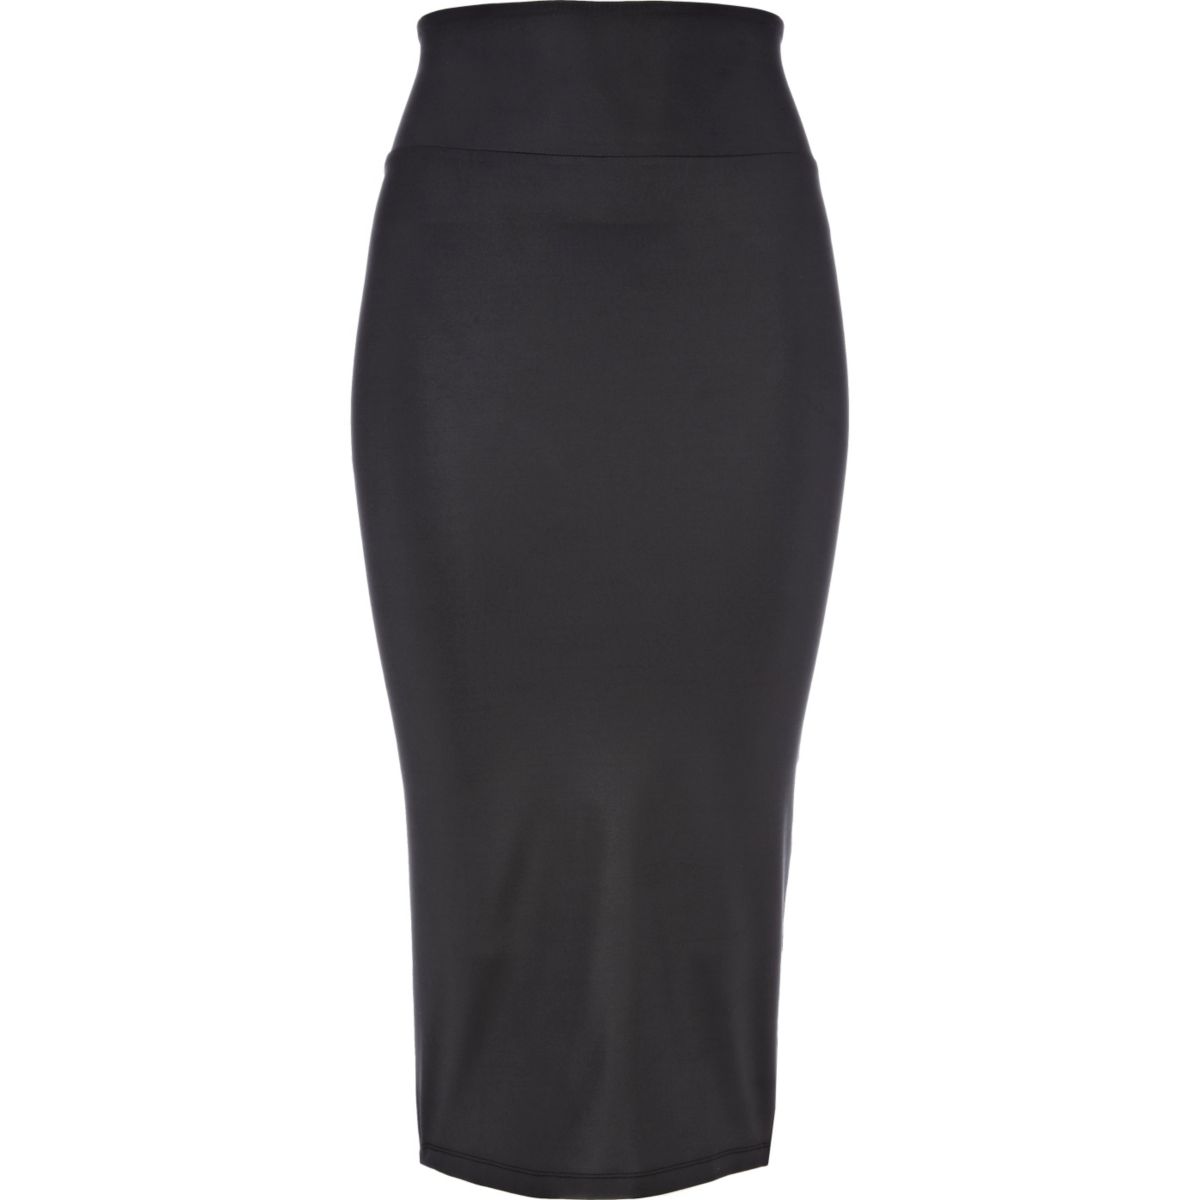 Black wet look midi tube skirt - Skirts - Sale - women